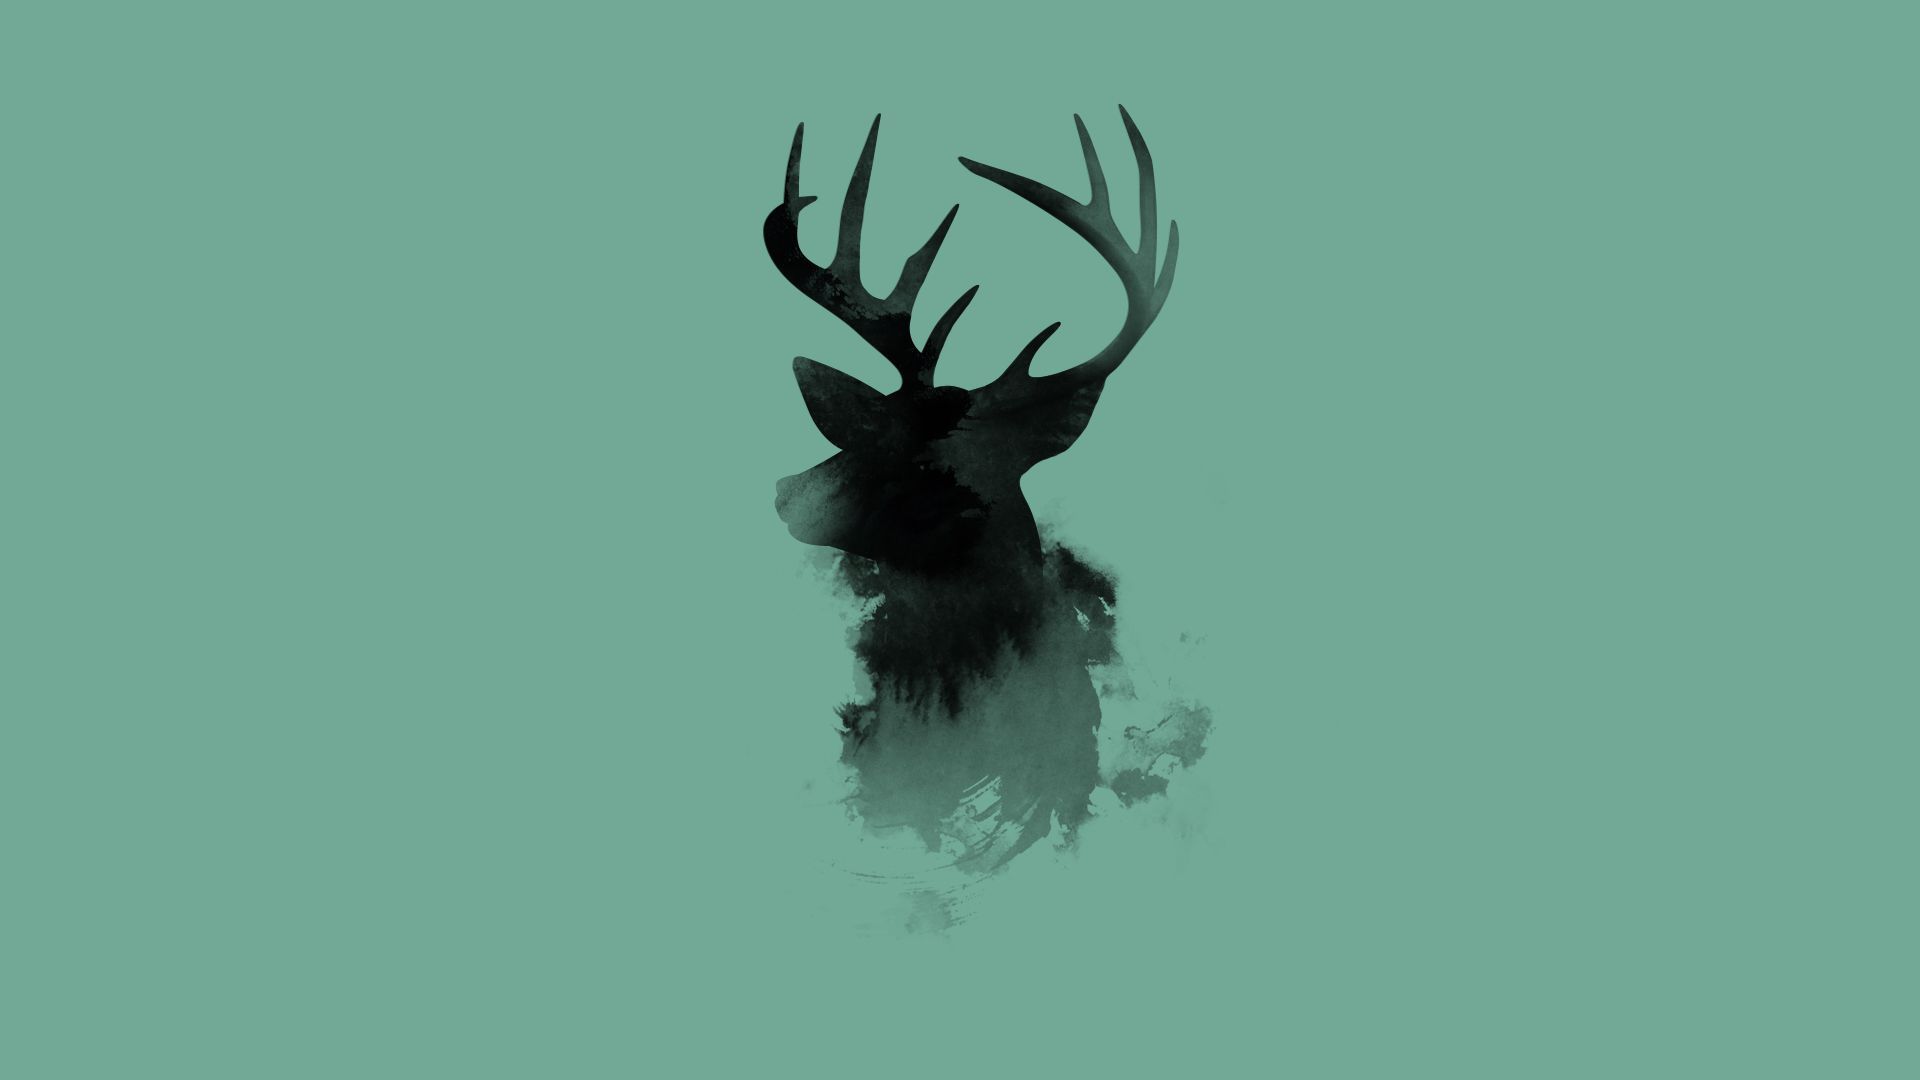  Hirsch Hintergrundbild 1920x1080. Deer [1920x1080]. Deer wallpaper, Digital artwork, Art wallpaper